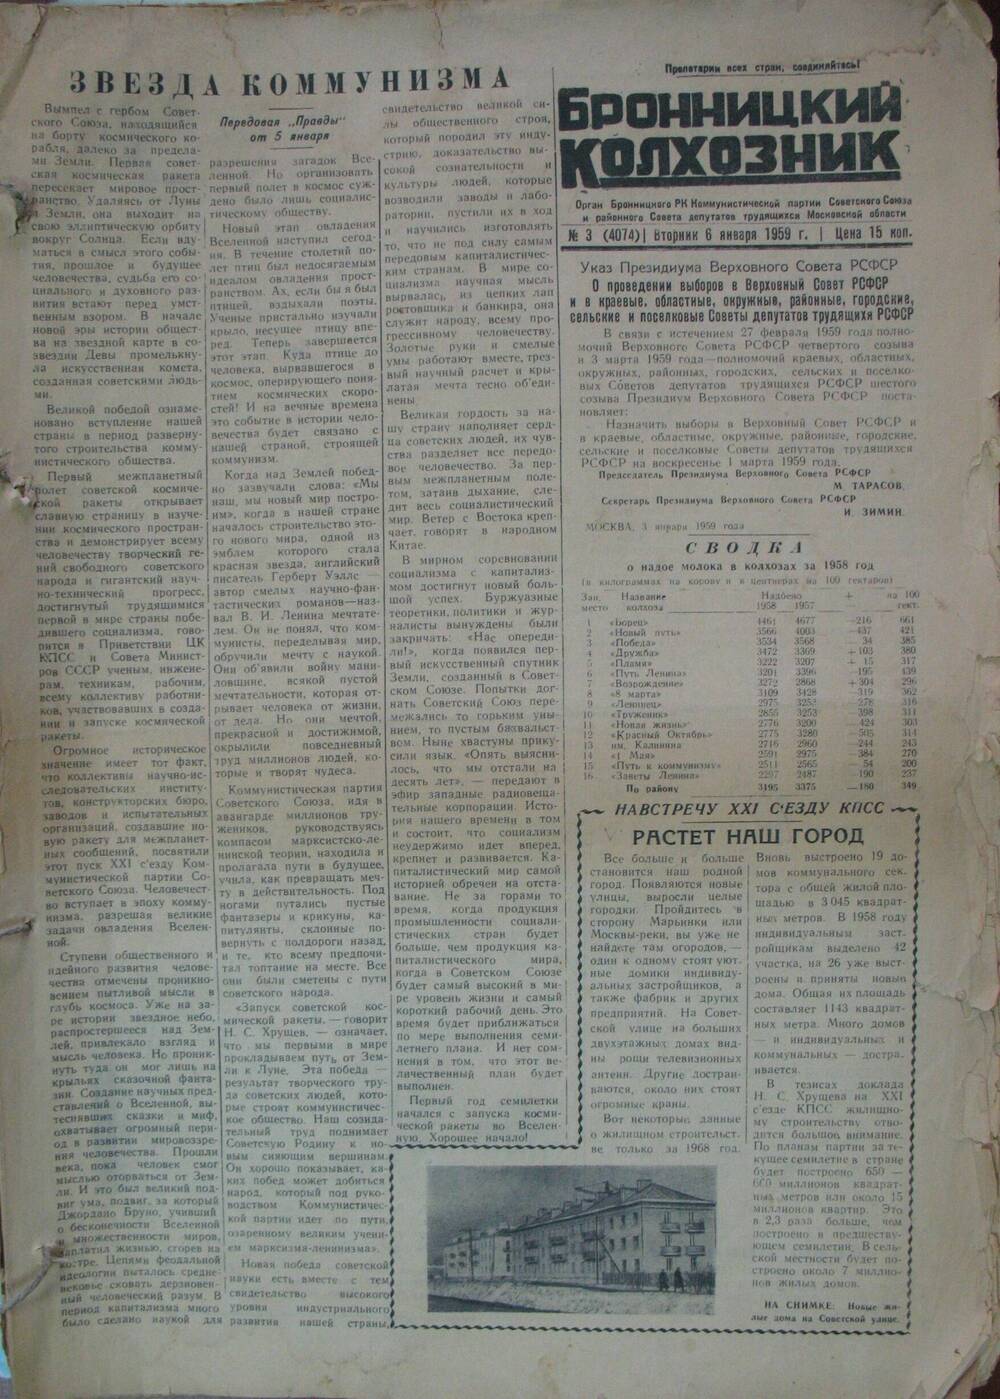 Бронницкий колхозник,  газета № 3 от 6 января 1959г